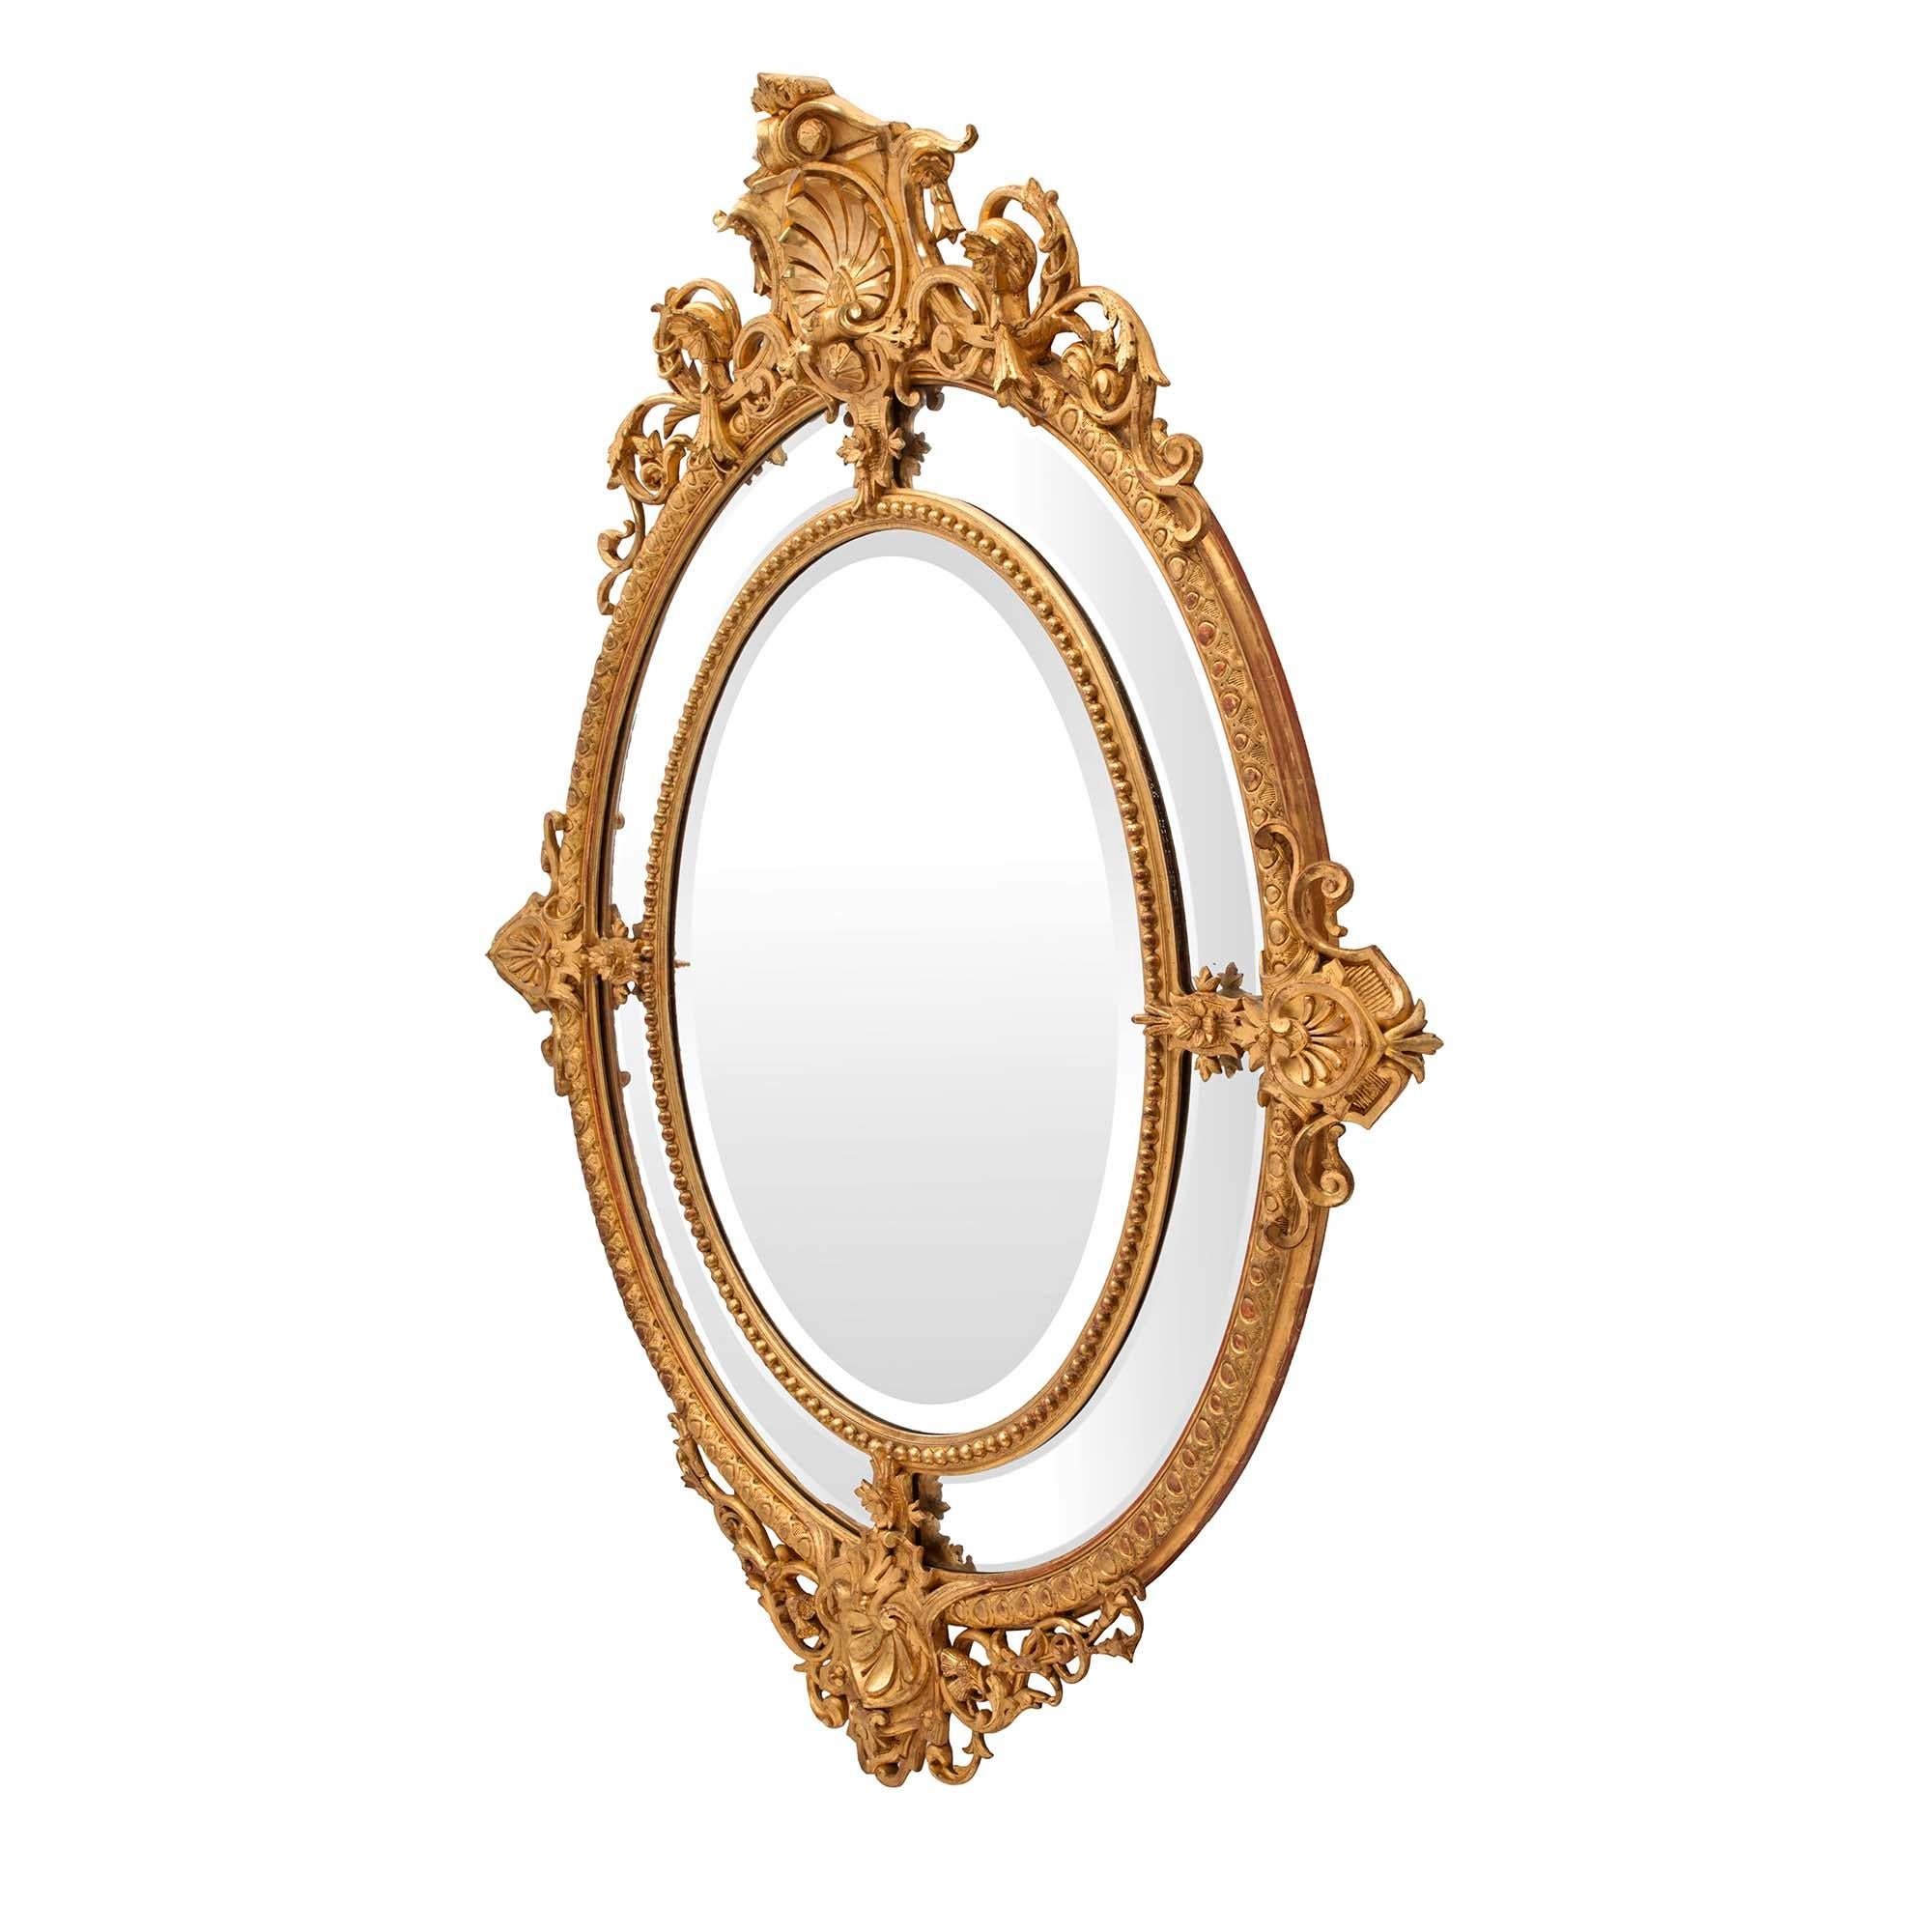 Un beau miroir français du 19ème siècle, de style Louis XVI, à double cadre ovale en bois doré. La plaque de miroir biseautée d'origine est encadrée d'une fine bordure perlée. Les quatre plaques de miroir biseautées d'origine, de forme arquée, sont